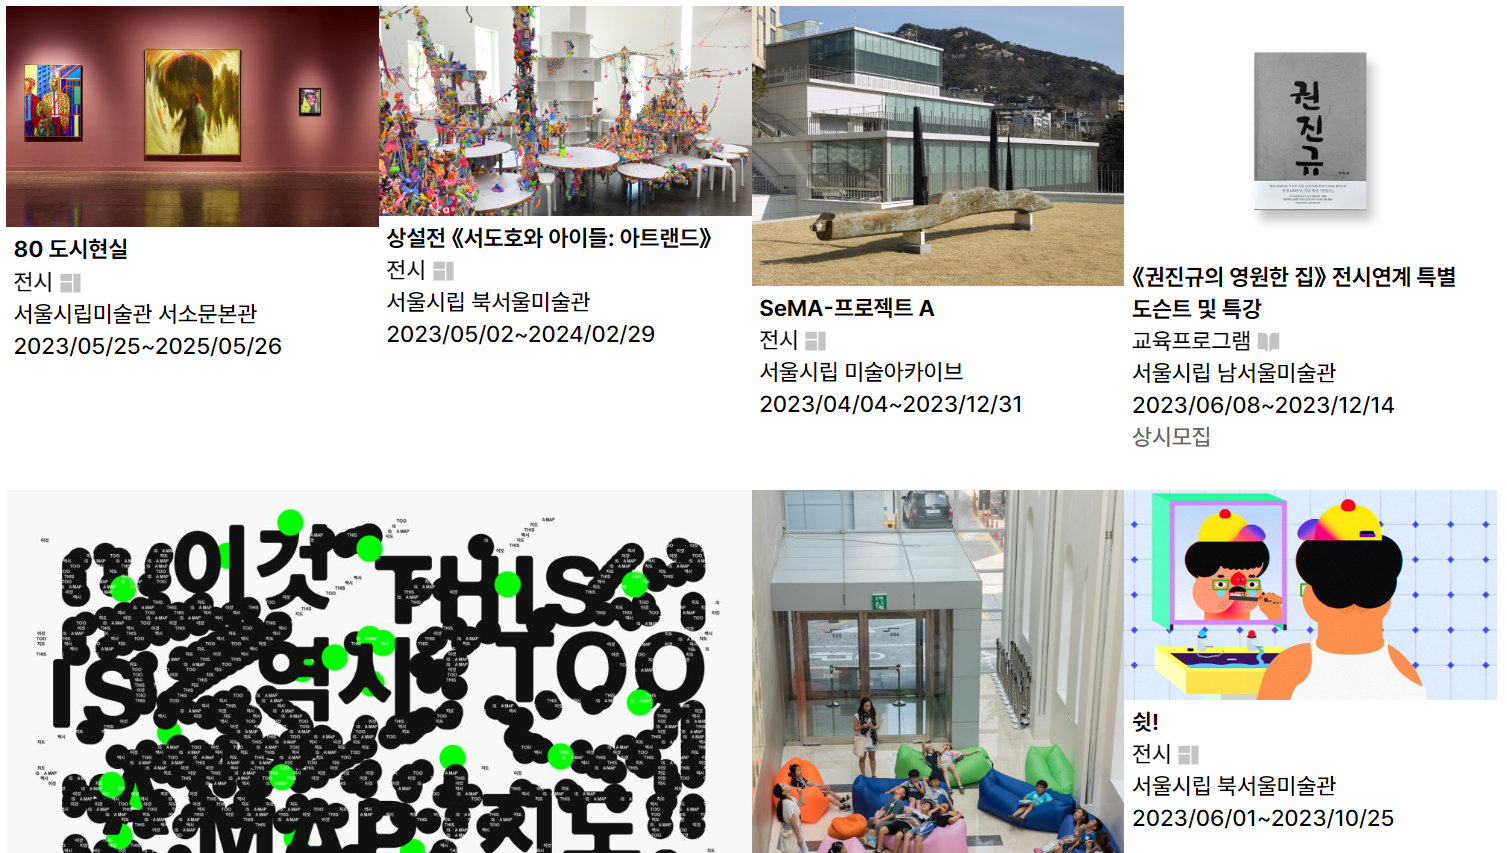 서울시립미술관의 전시와 프로그램 안내 화면